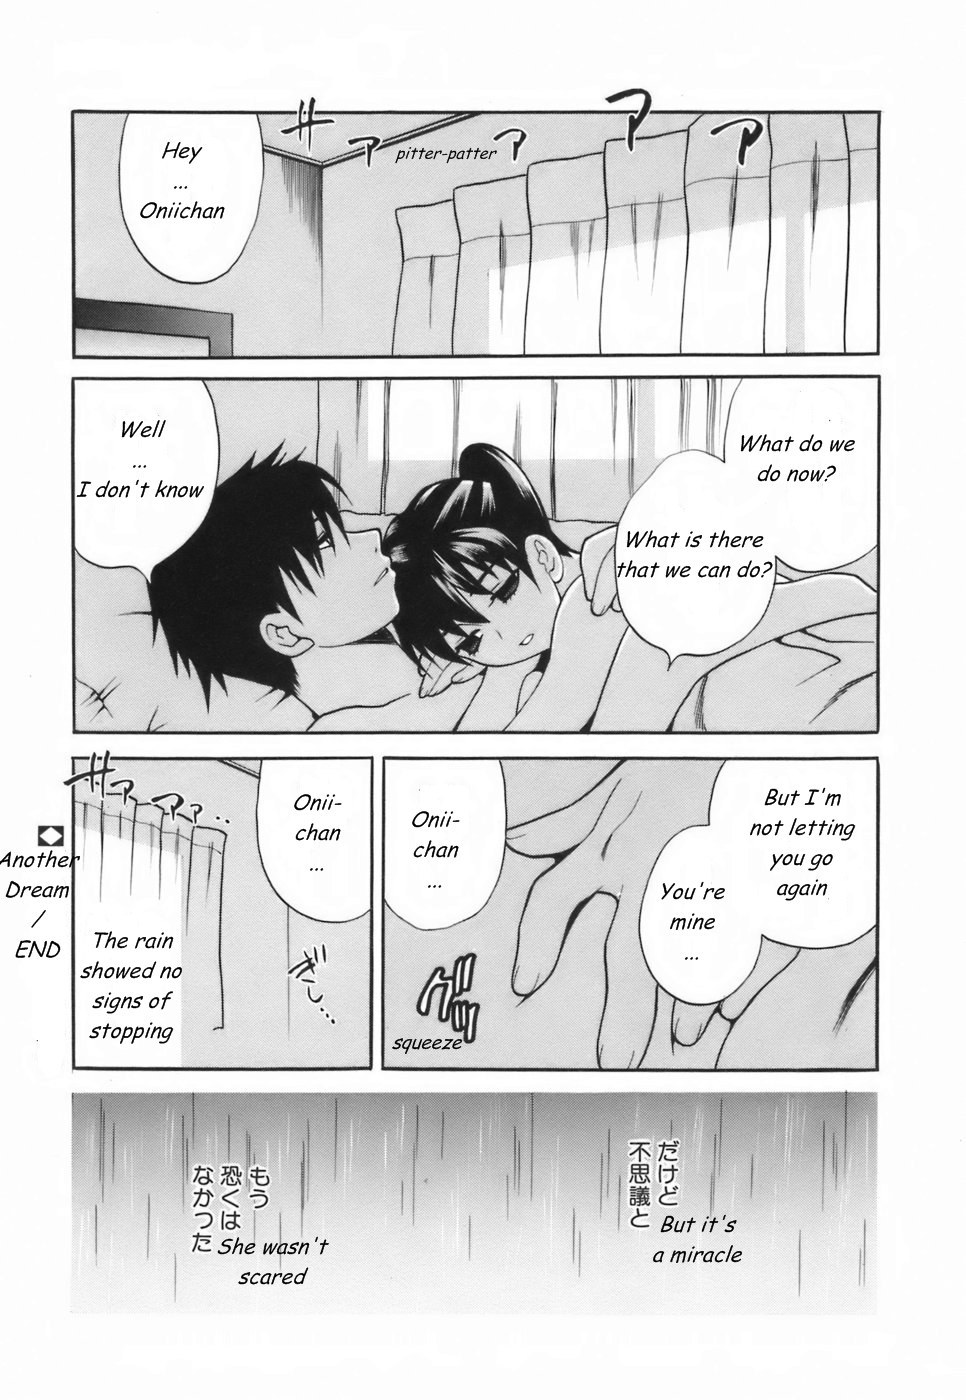 Another Dream 15 hentai manga